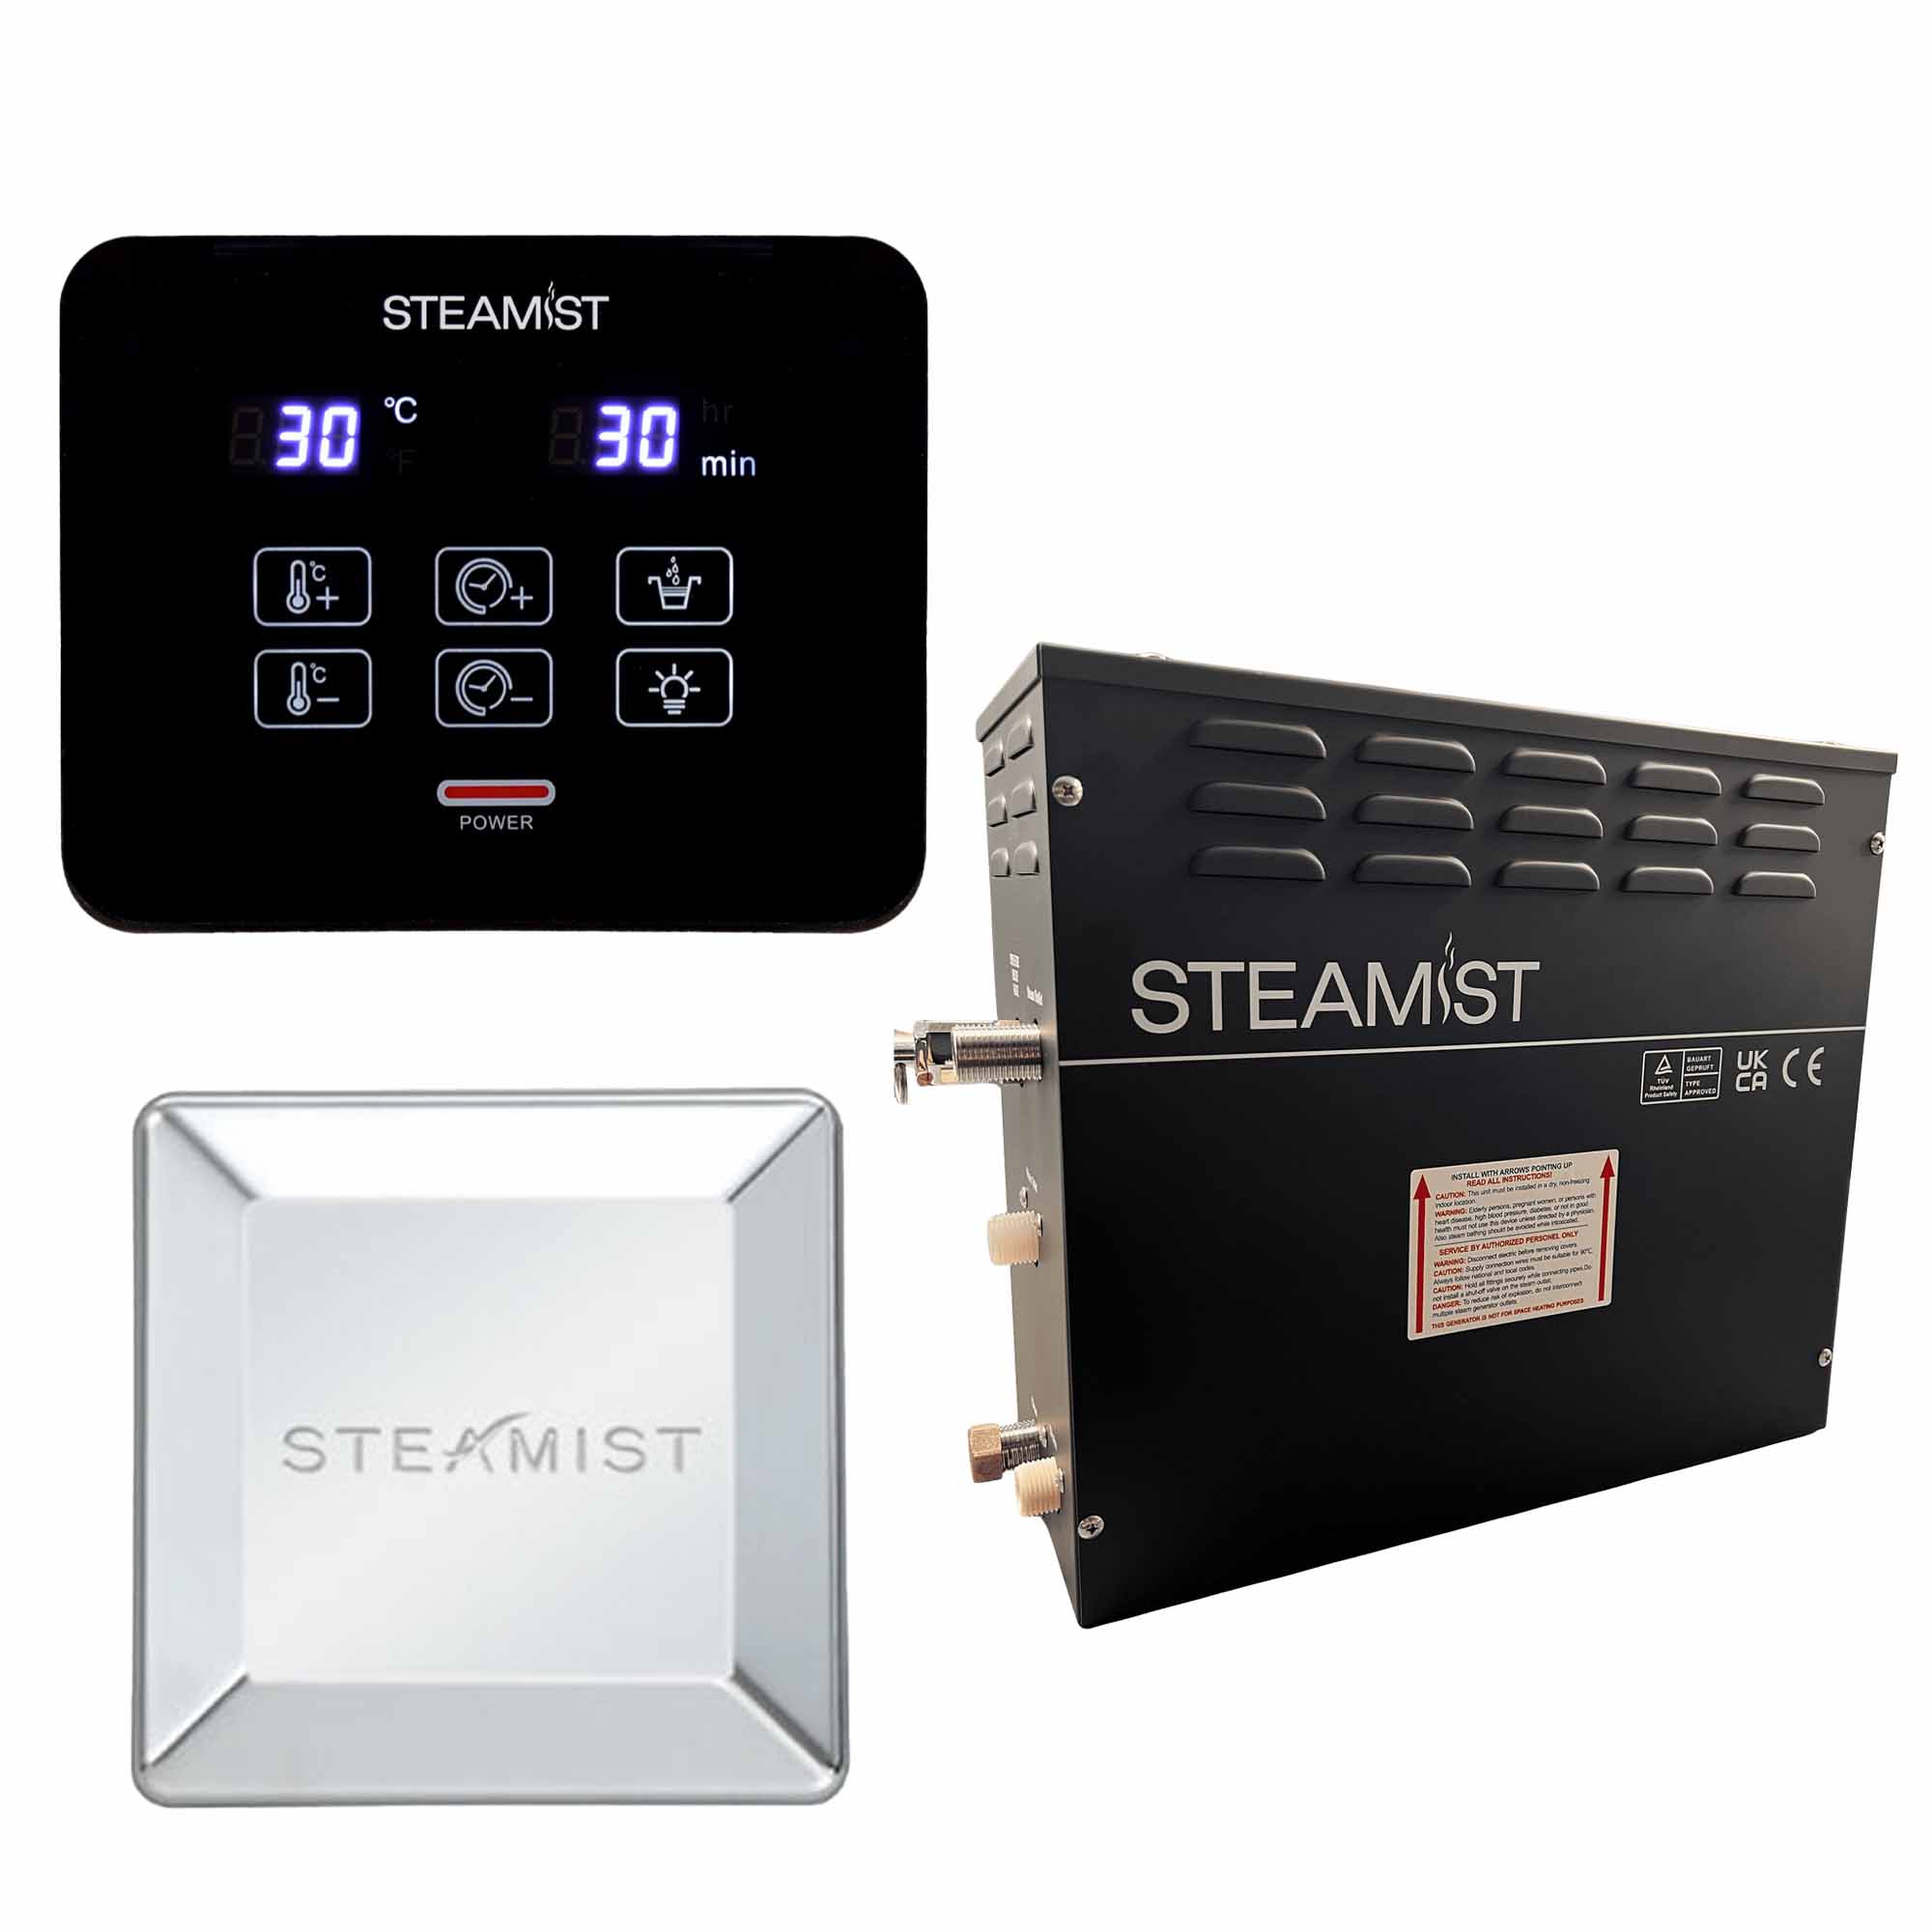 steamist steam shower generator kit chrome